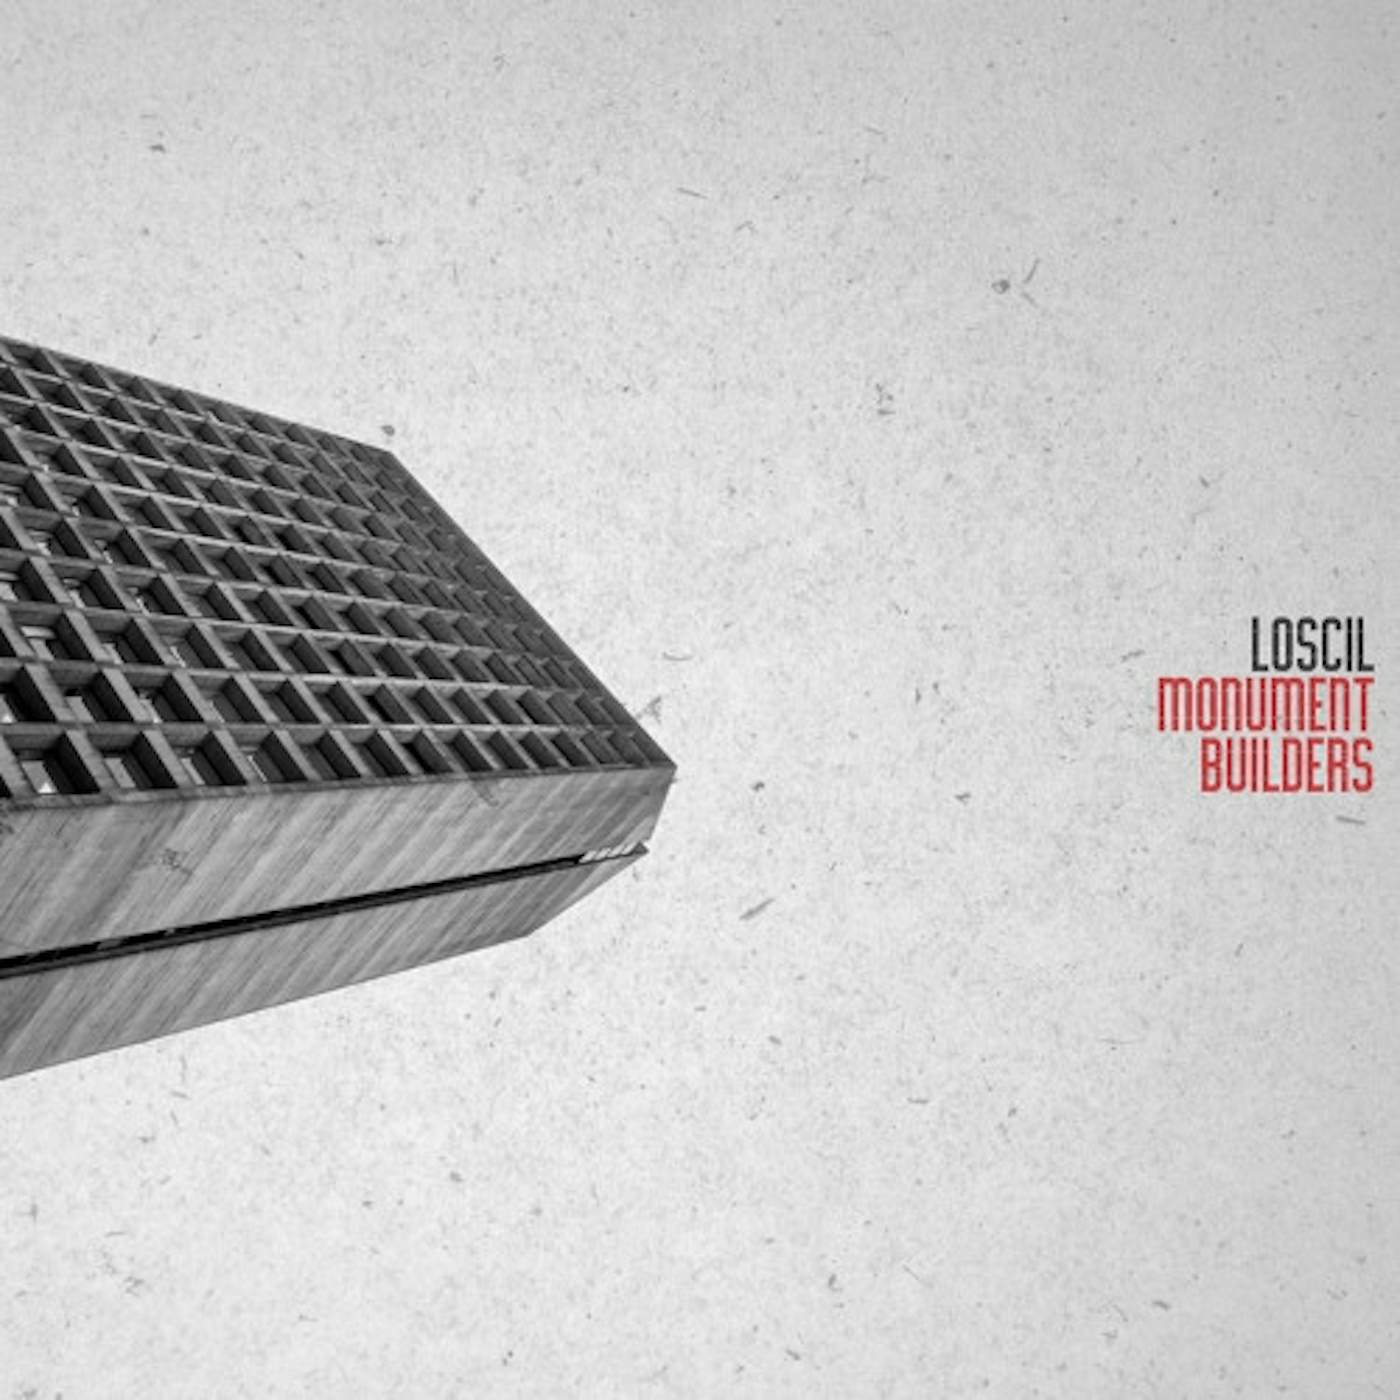 Loscil MONUMENT BUILDERS CD